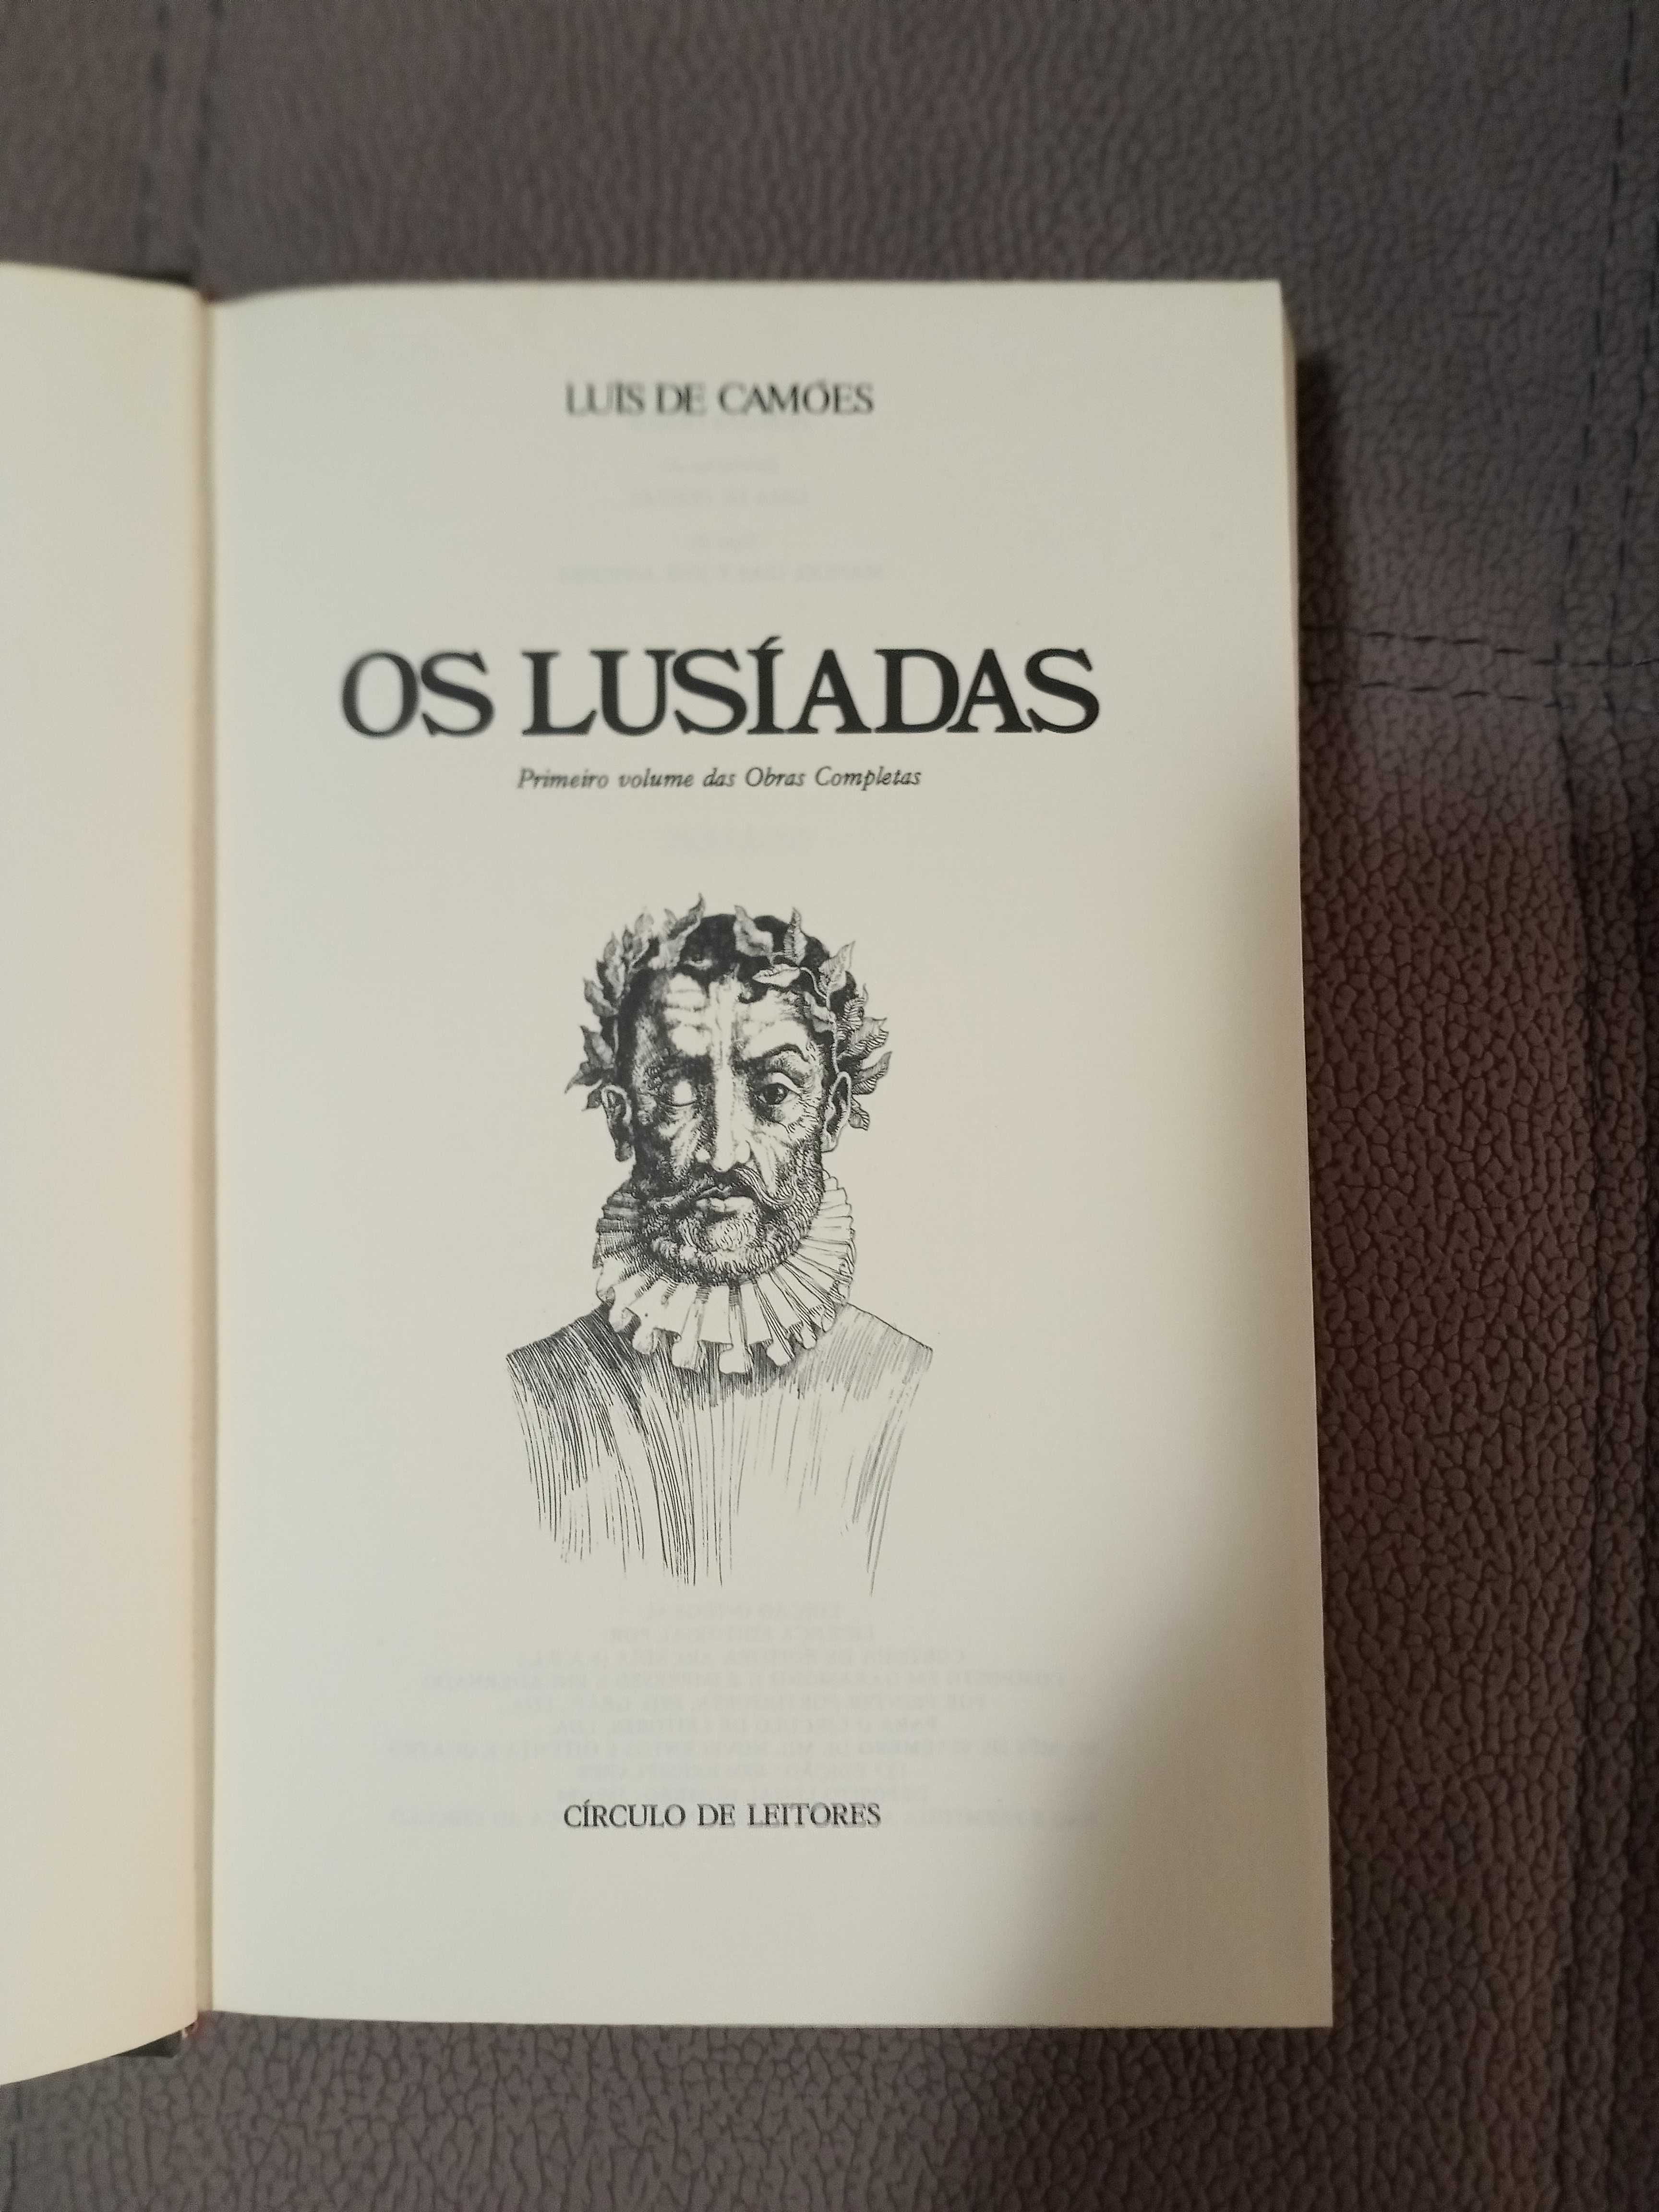 Obras completas de Luís de Camões